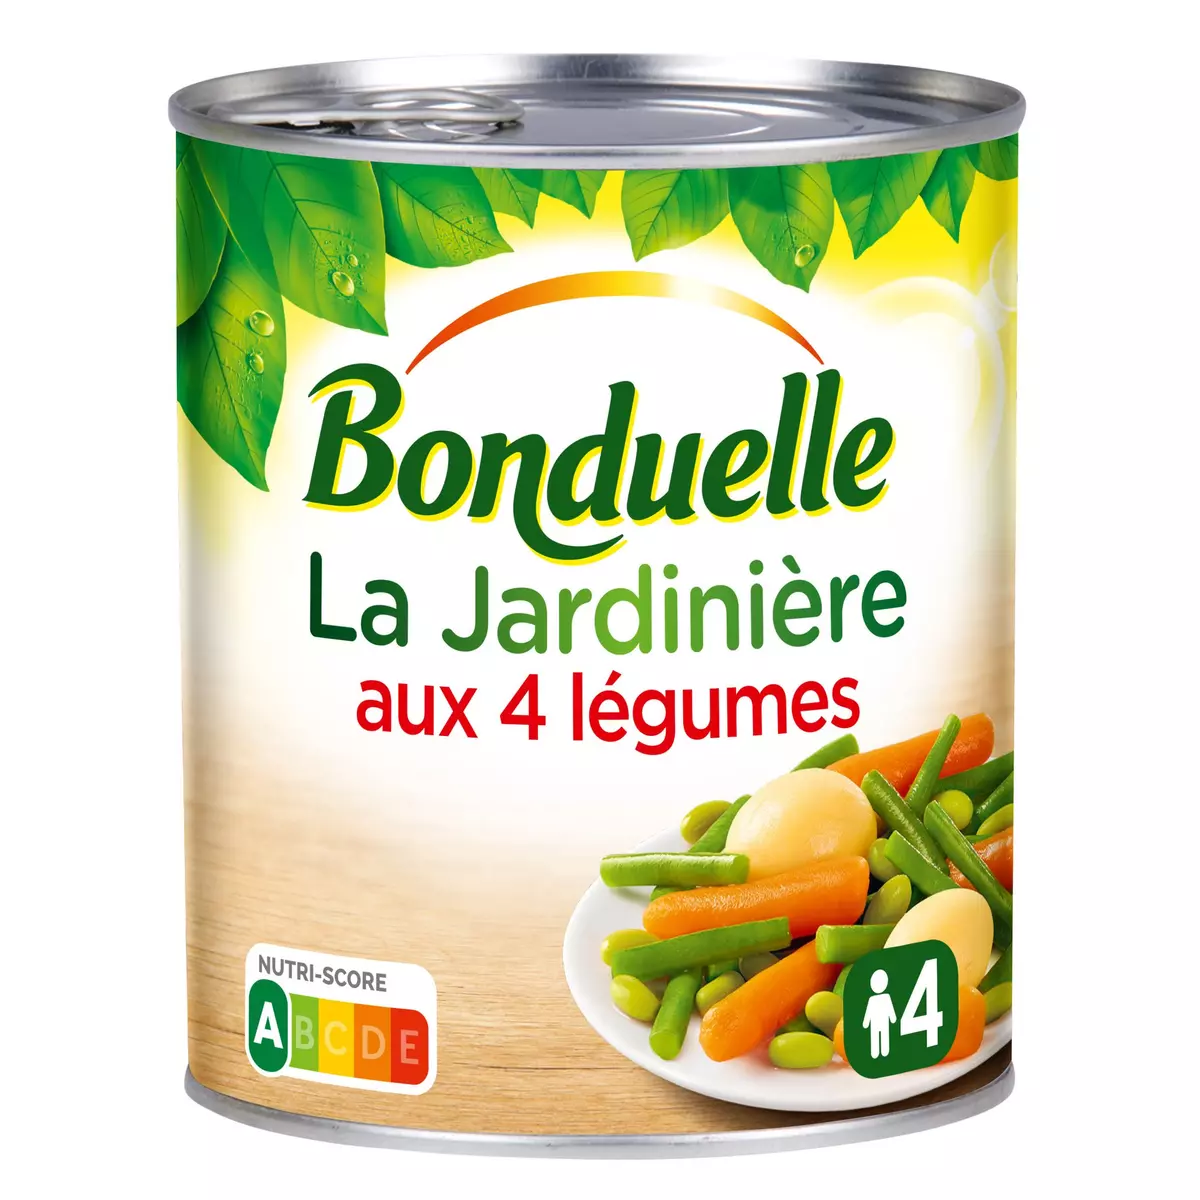 BONDUELLE Jardinière aux 4 légumes 510g